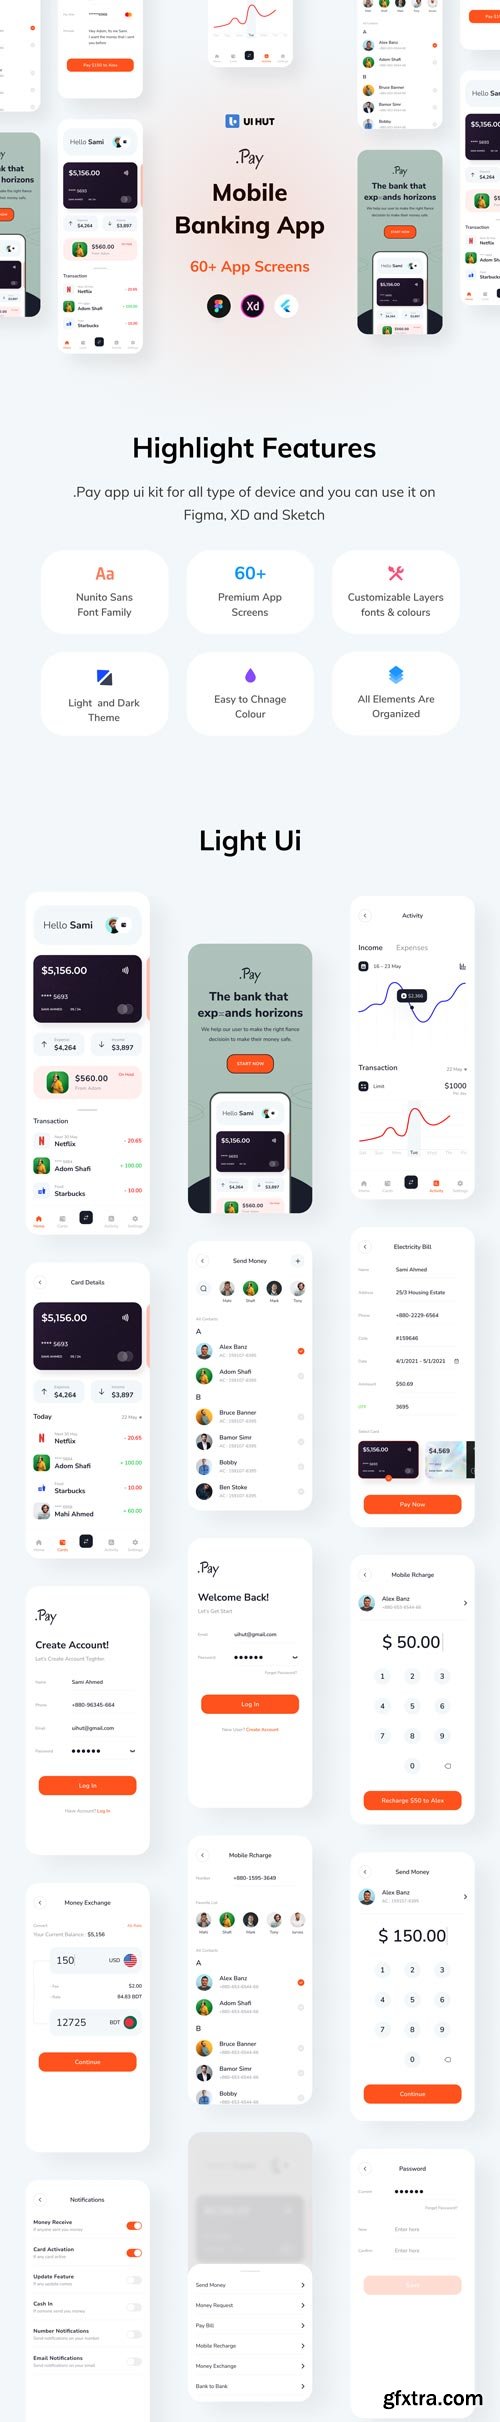 UiHut - Pay Banking App Ui Kit - 10839